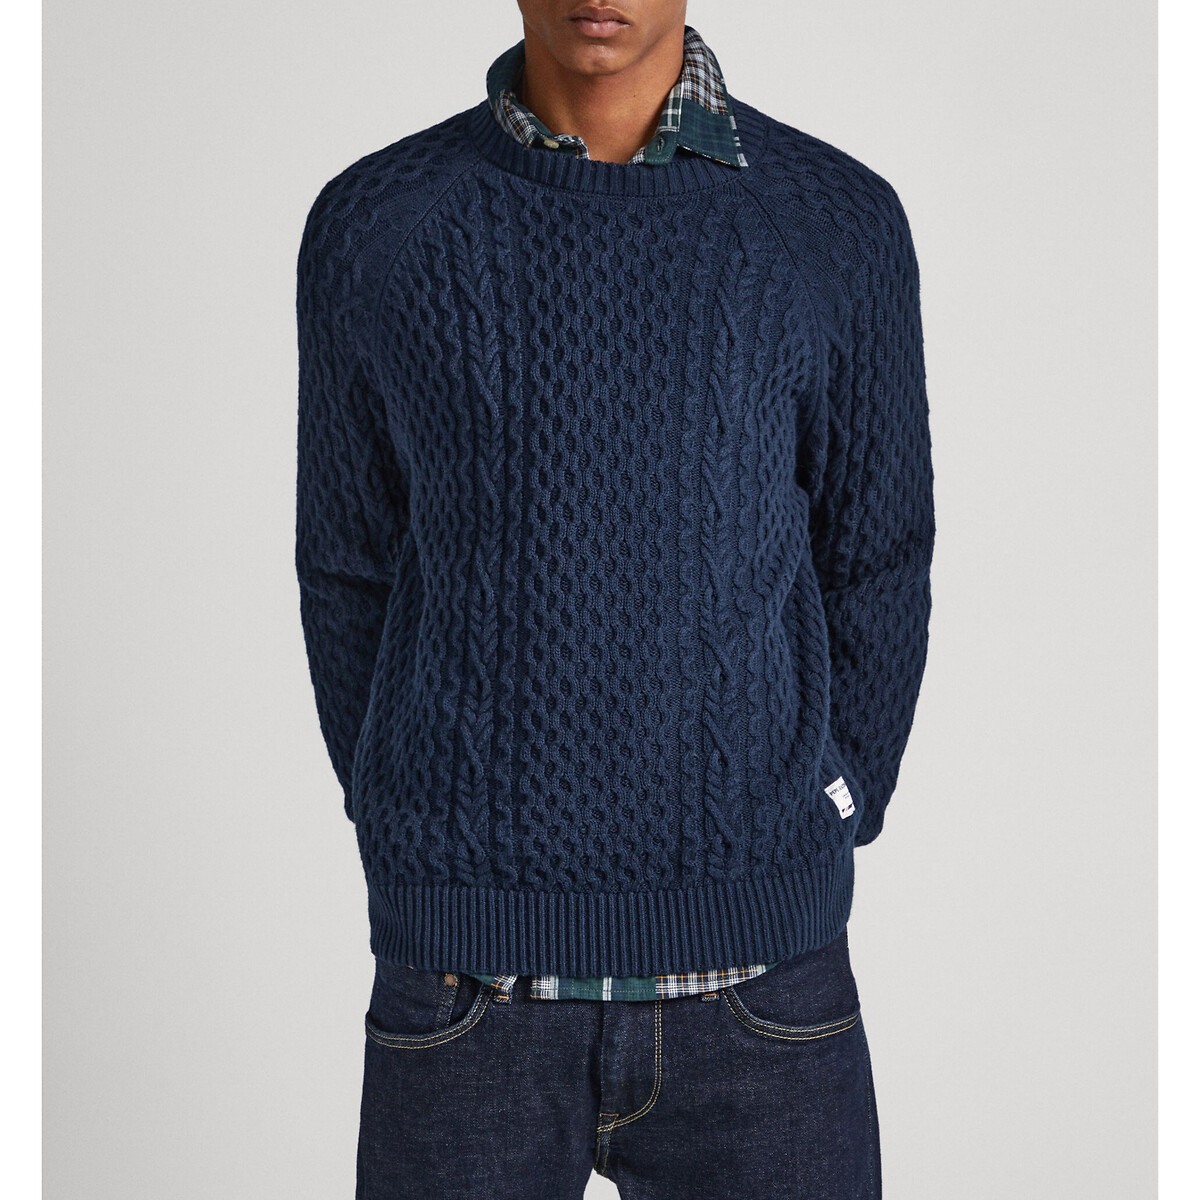 Пуловер с круглым вырезом из текстурированного трикотажа M синий пуловер с круглым вырезом signature из витого трикотажа xl синий